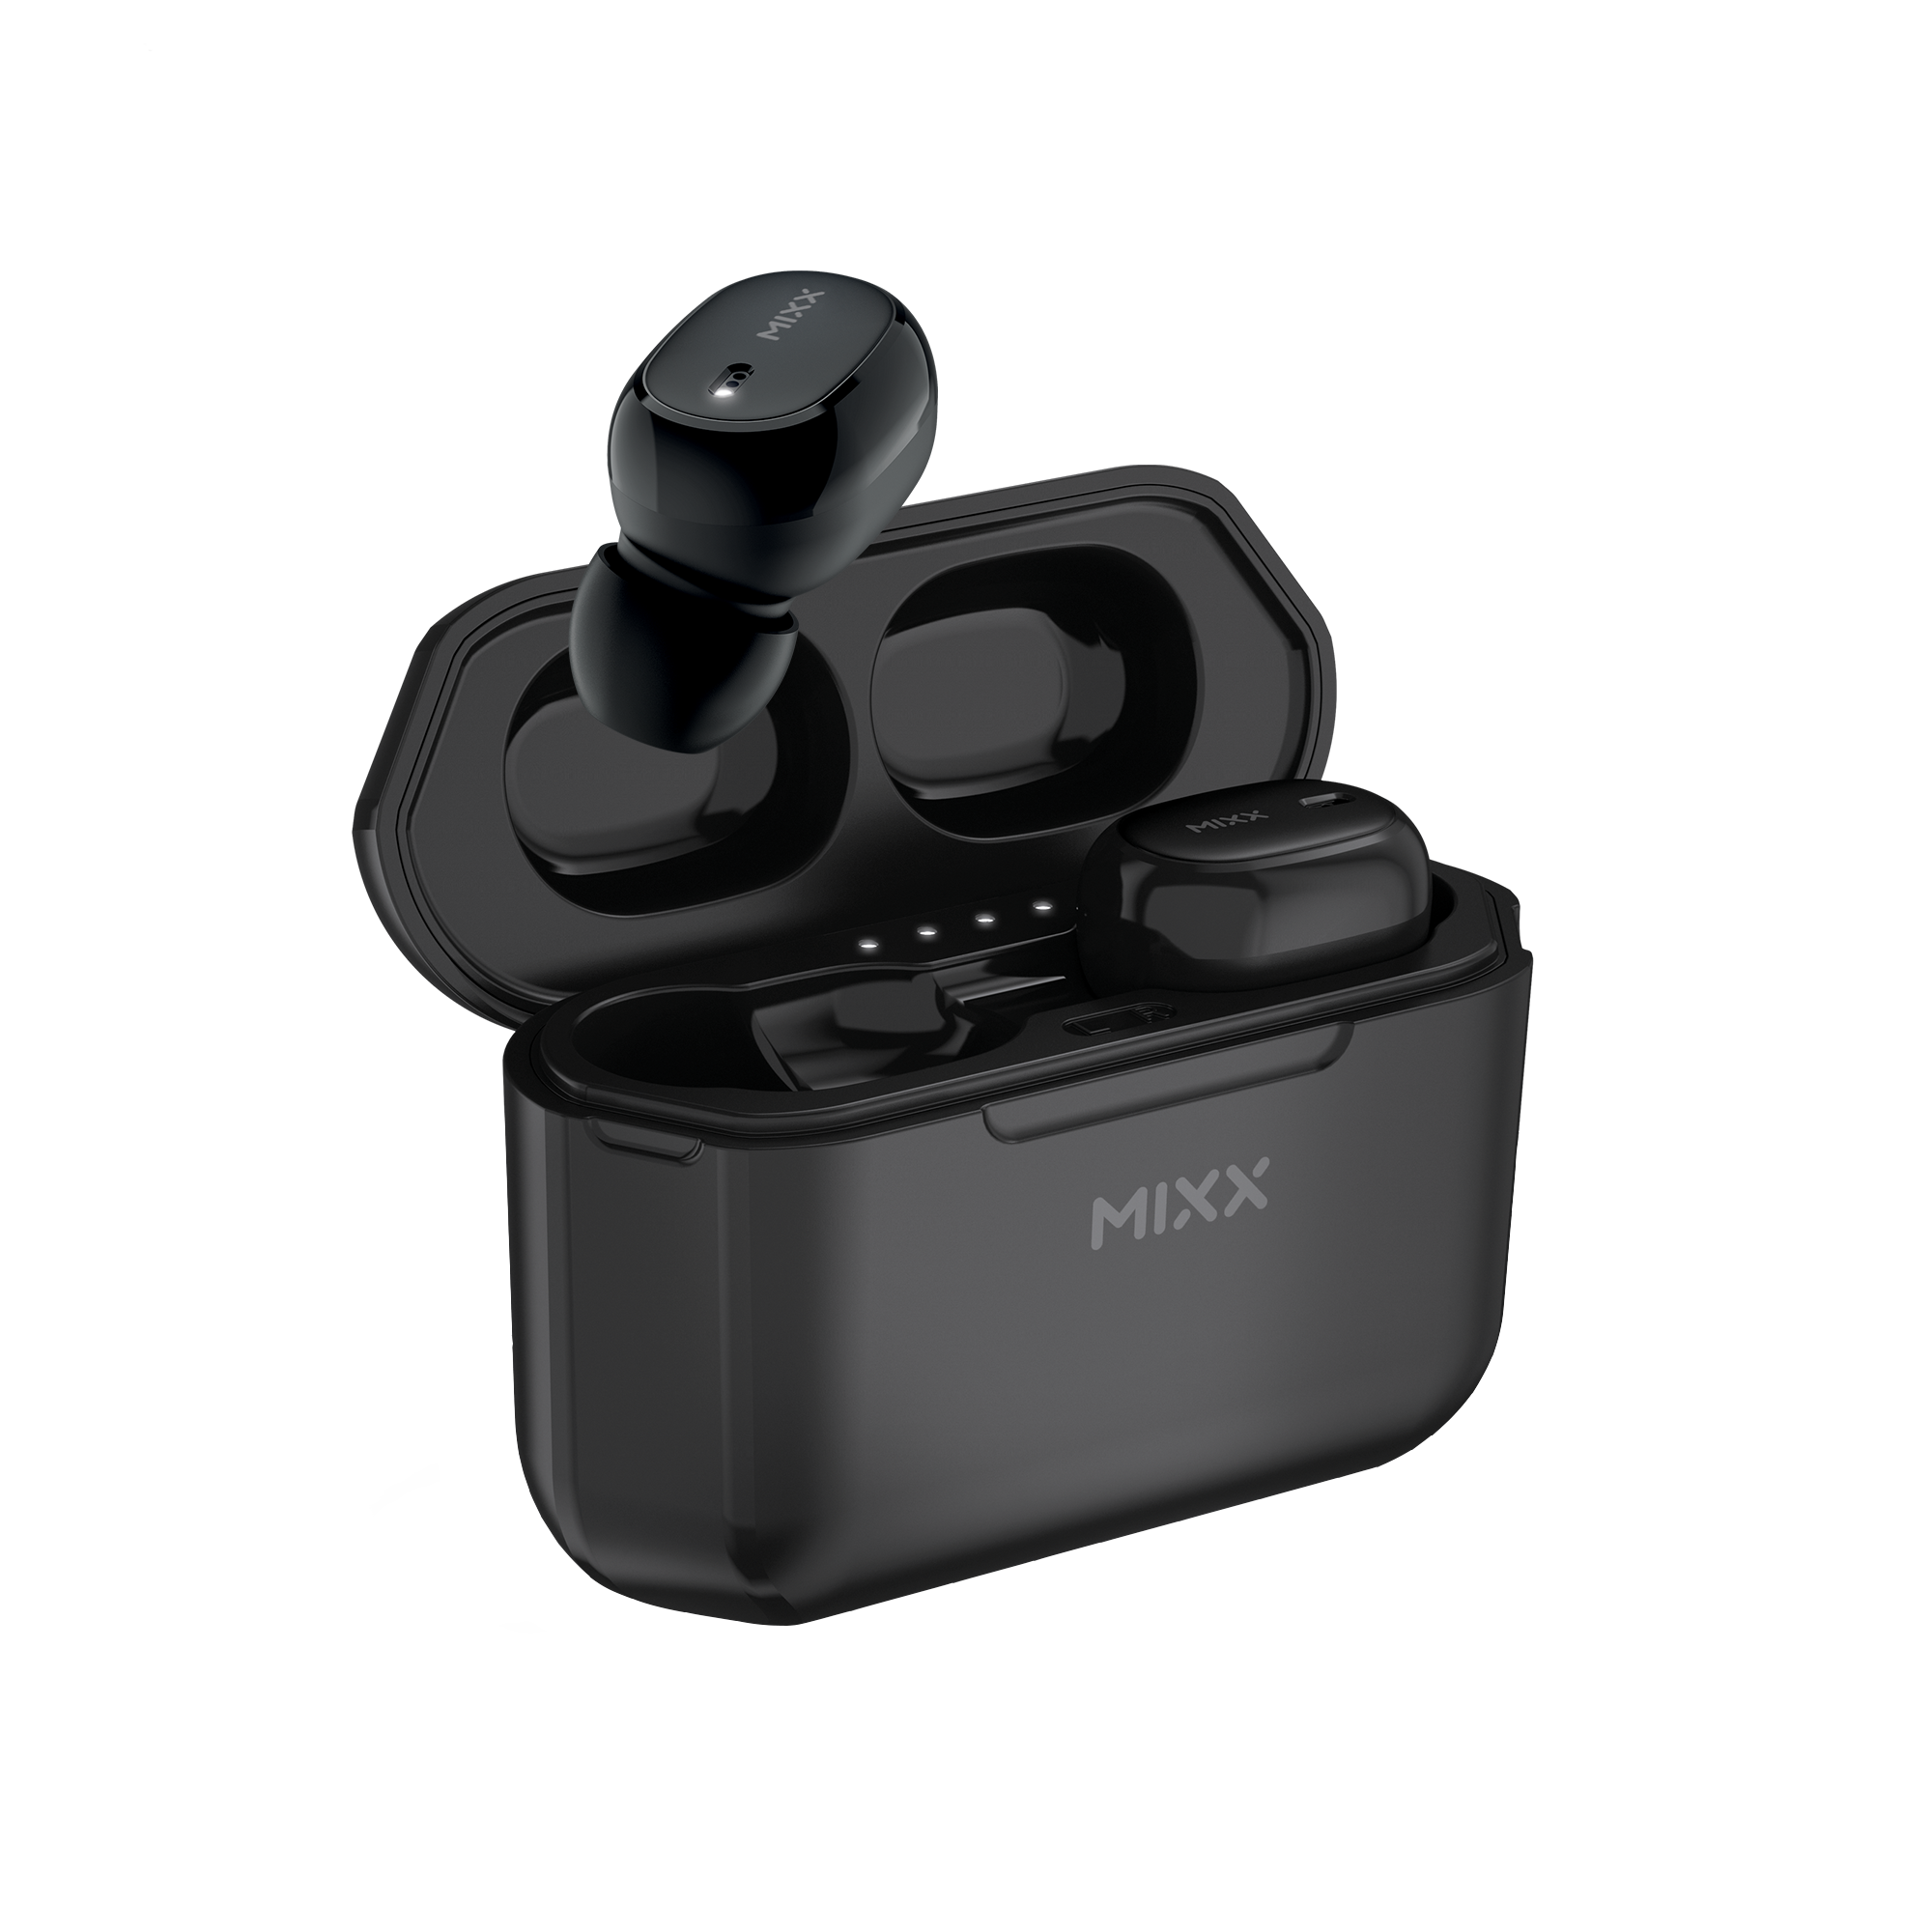 In-ear MIXX Schwarz 1, StreamBuds Mini Kopfhörer